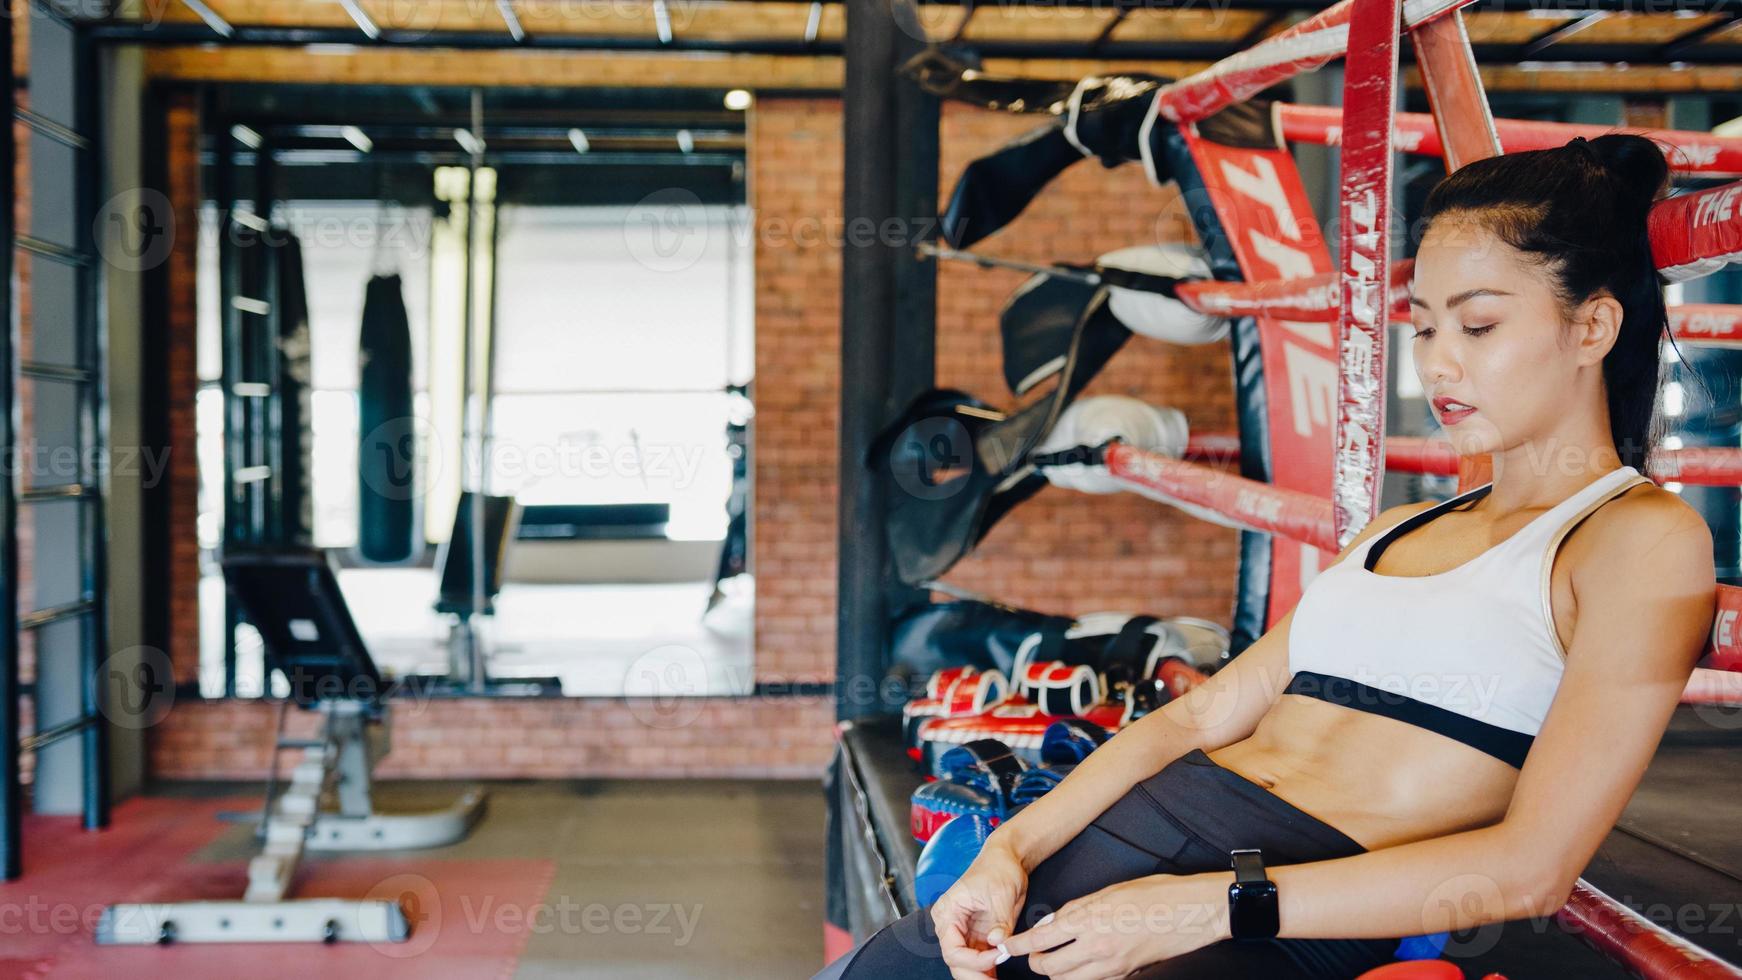 El entrenamiento del ejercicio de kickboxing de la señora joven de Asia se siente cansado después del entrenamiento deportivo en el ring de boxeo en la clase de gimnasia. deportista actividad recreativa, entrenamiento funcional, concepto de estilo de vida saludable. foto